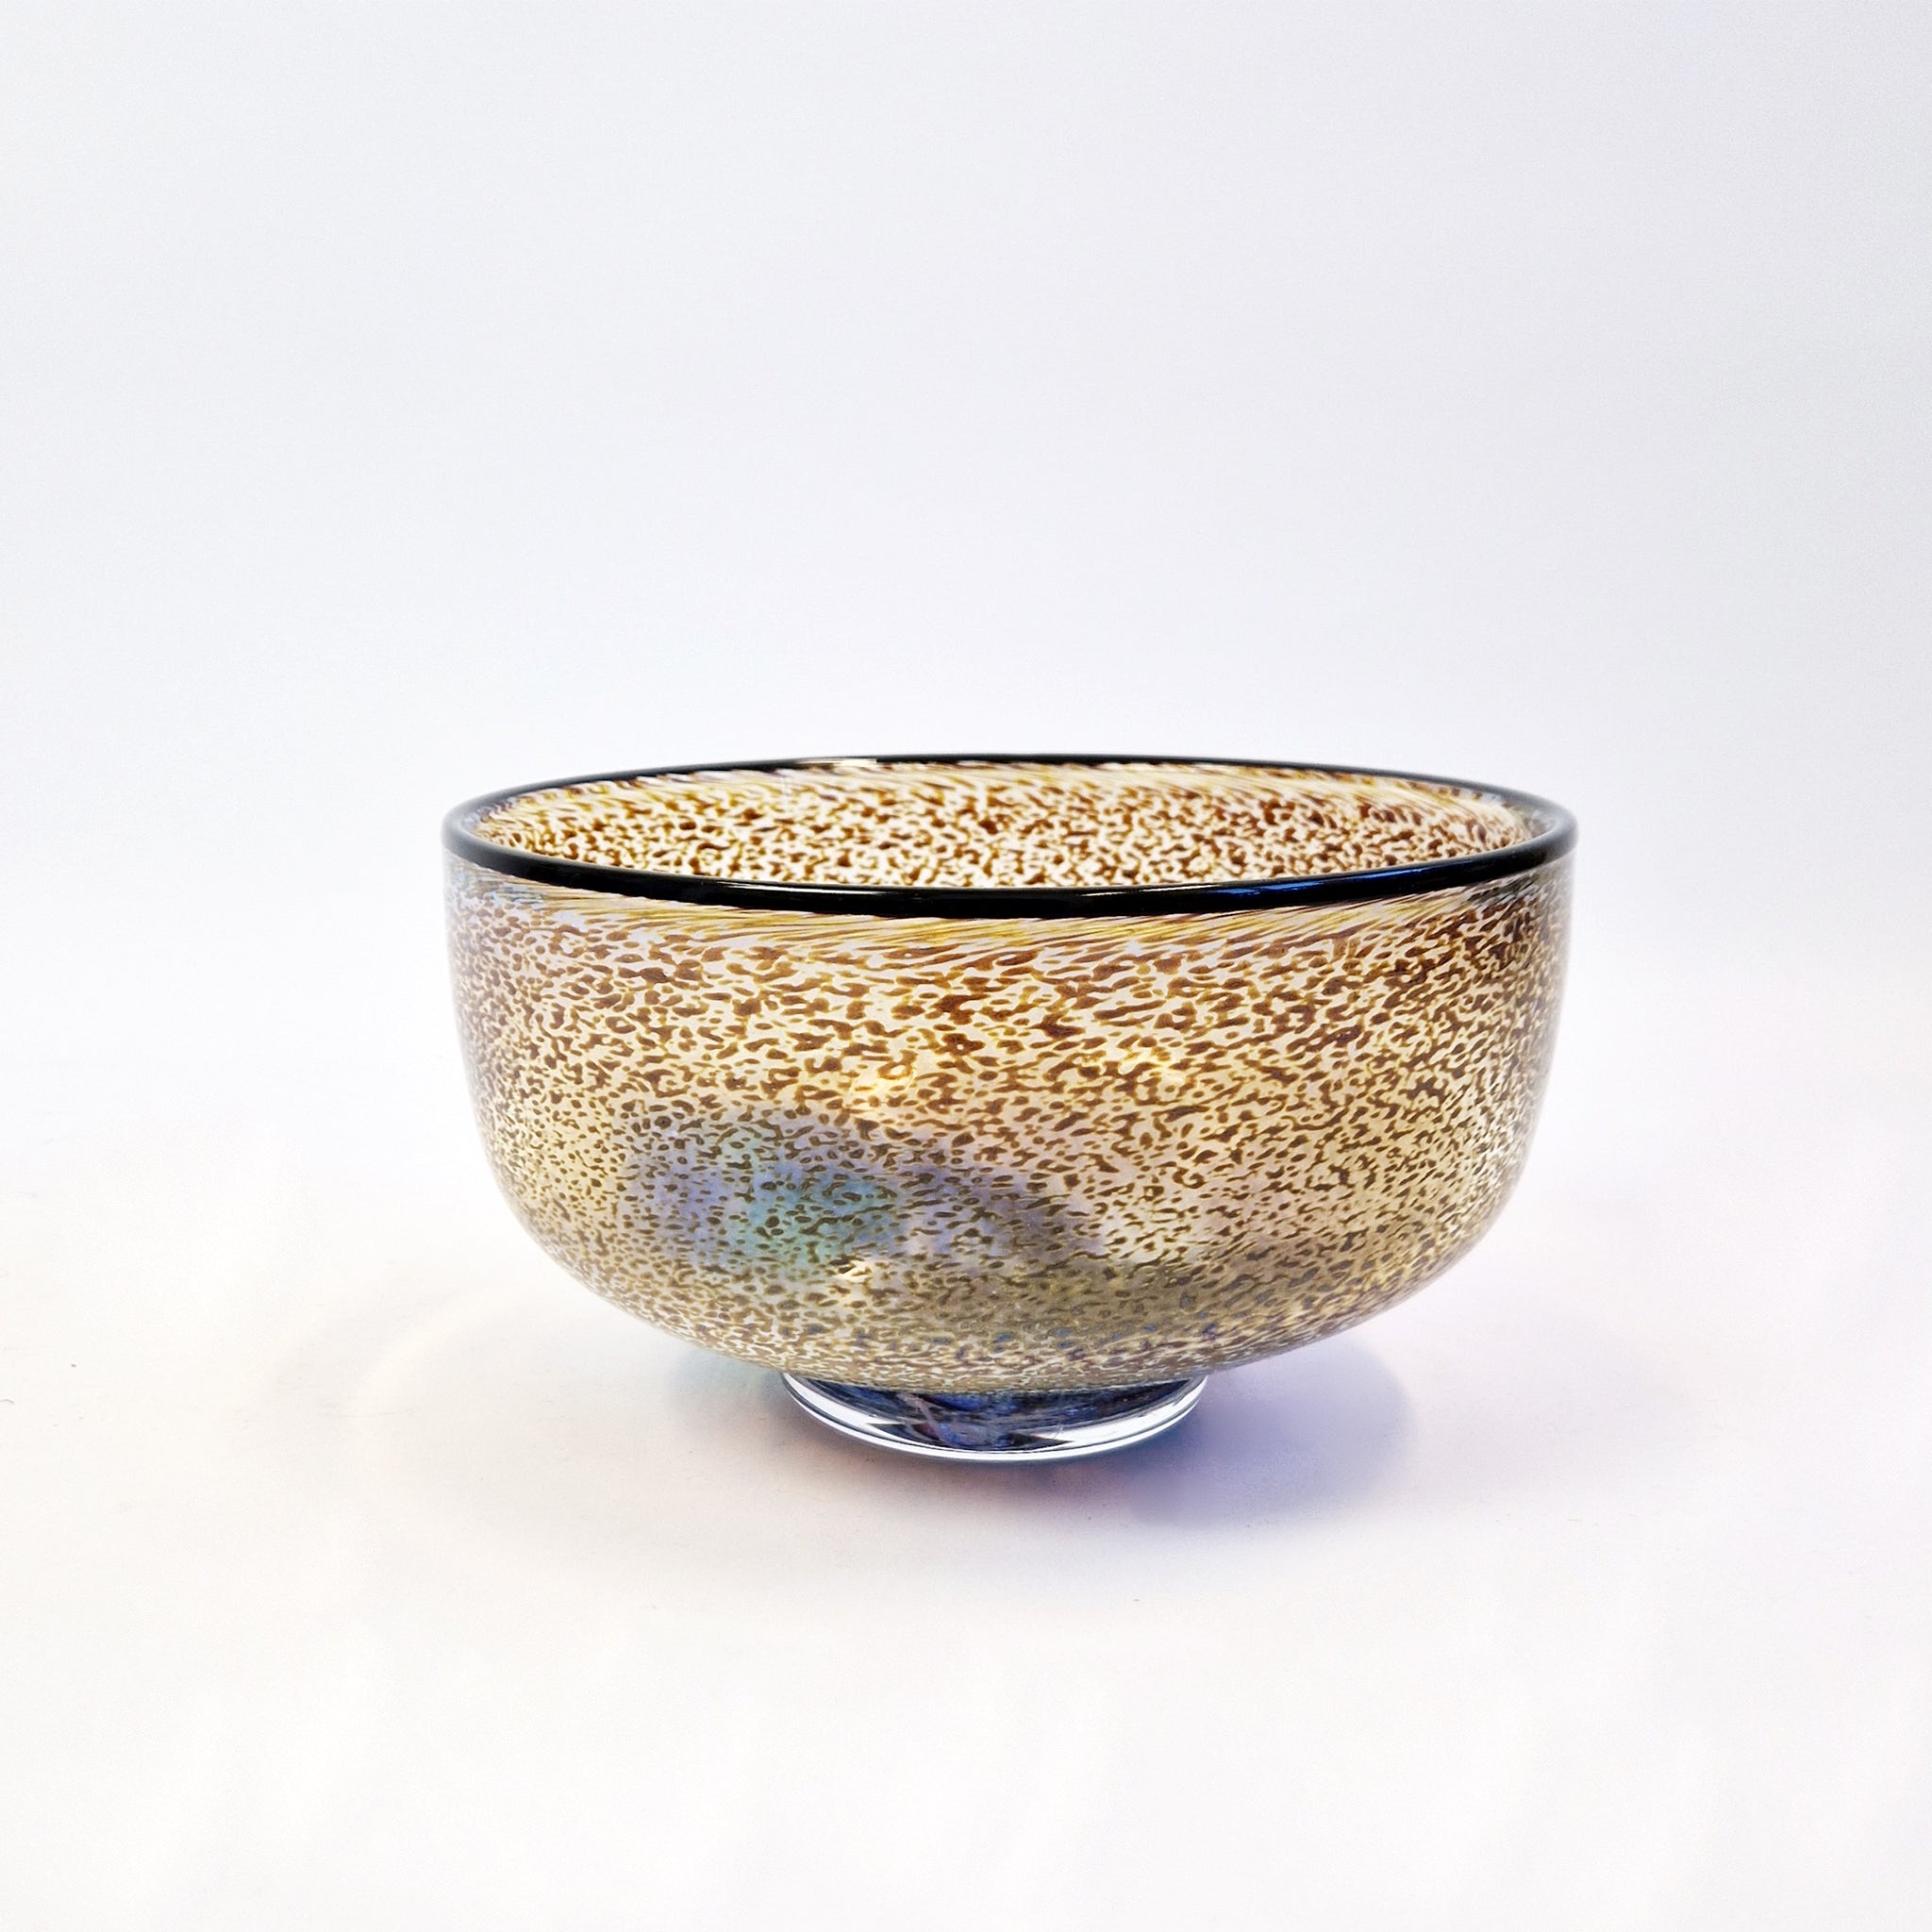 Vintage art glass bowl by Bertil Vallien for Kosta Boda